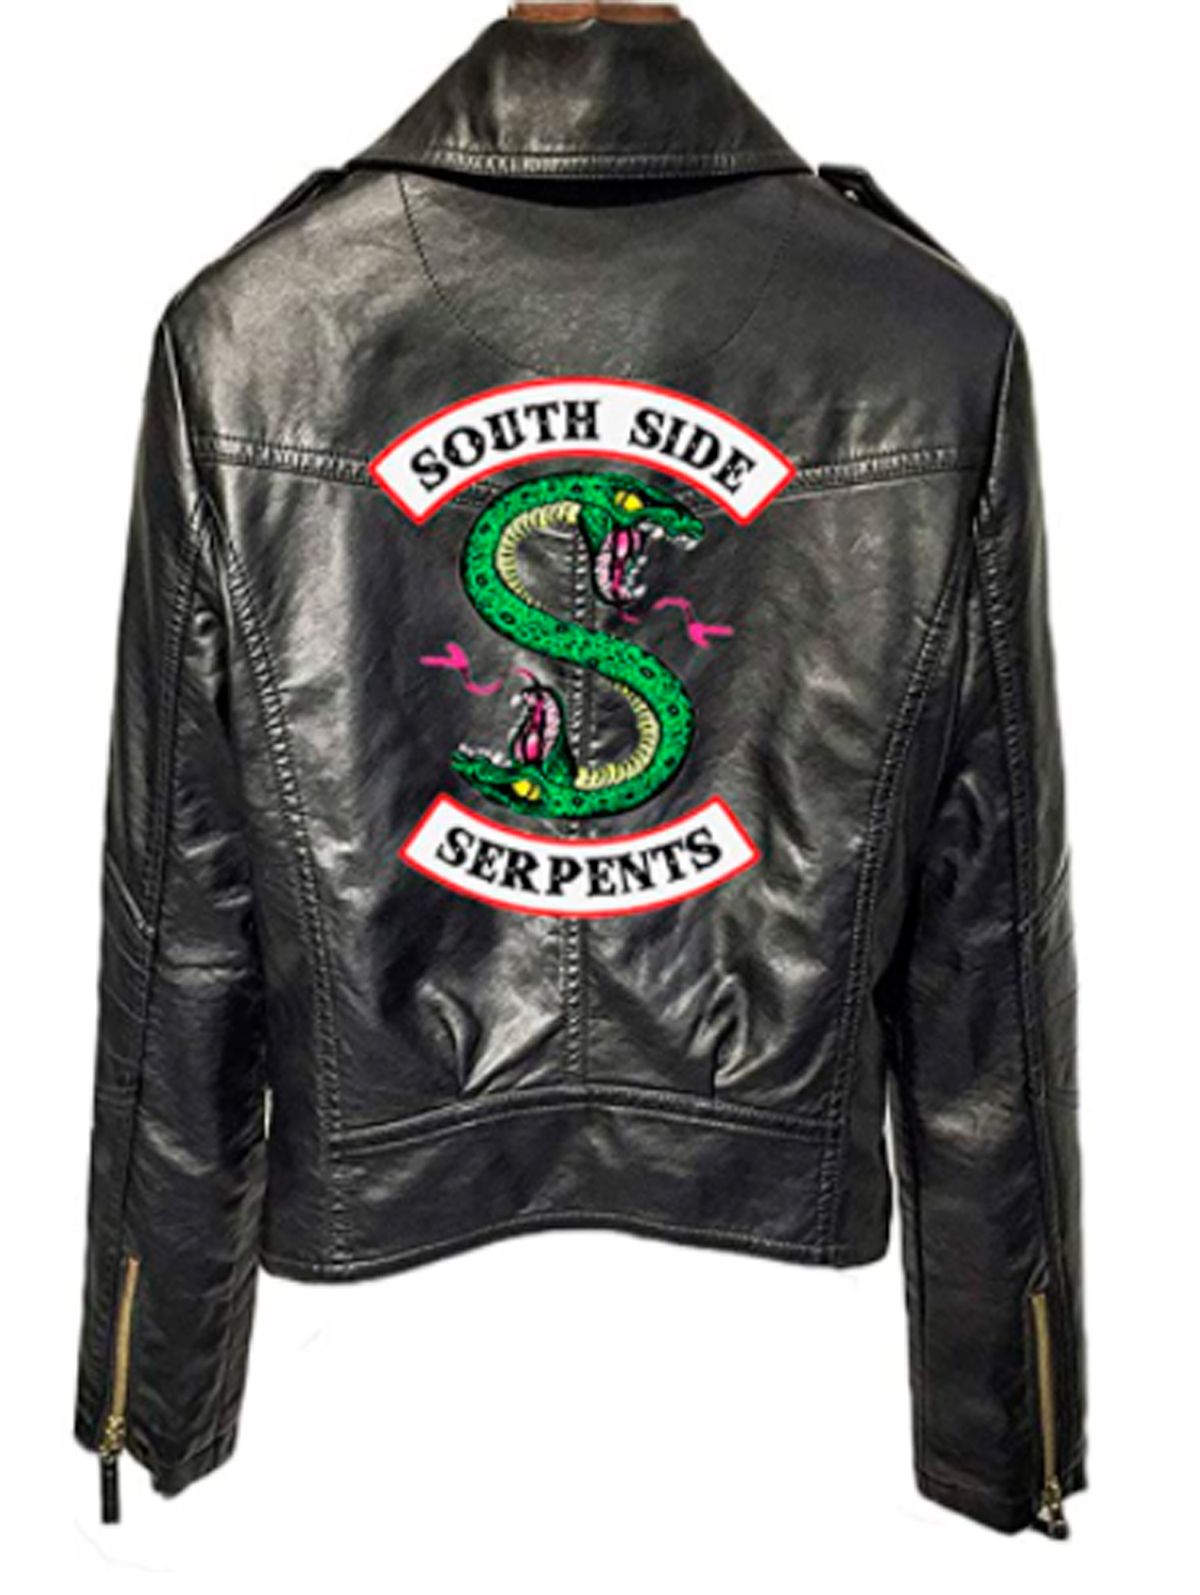 La chaqueta de Las Serpientes de Riverdale, por de 40 euros